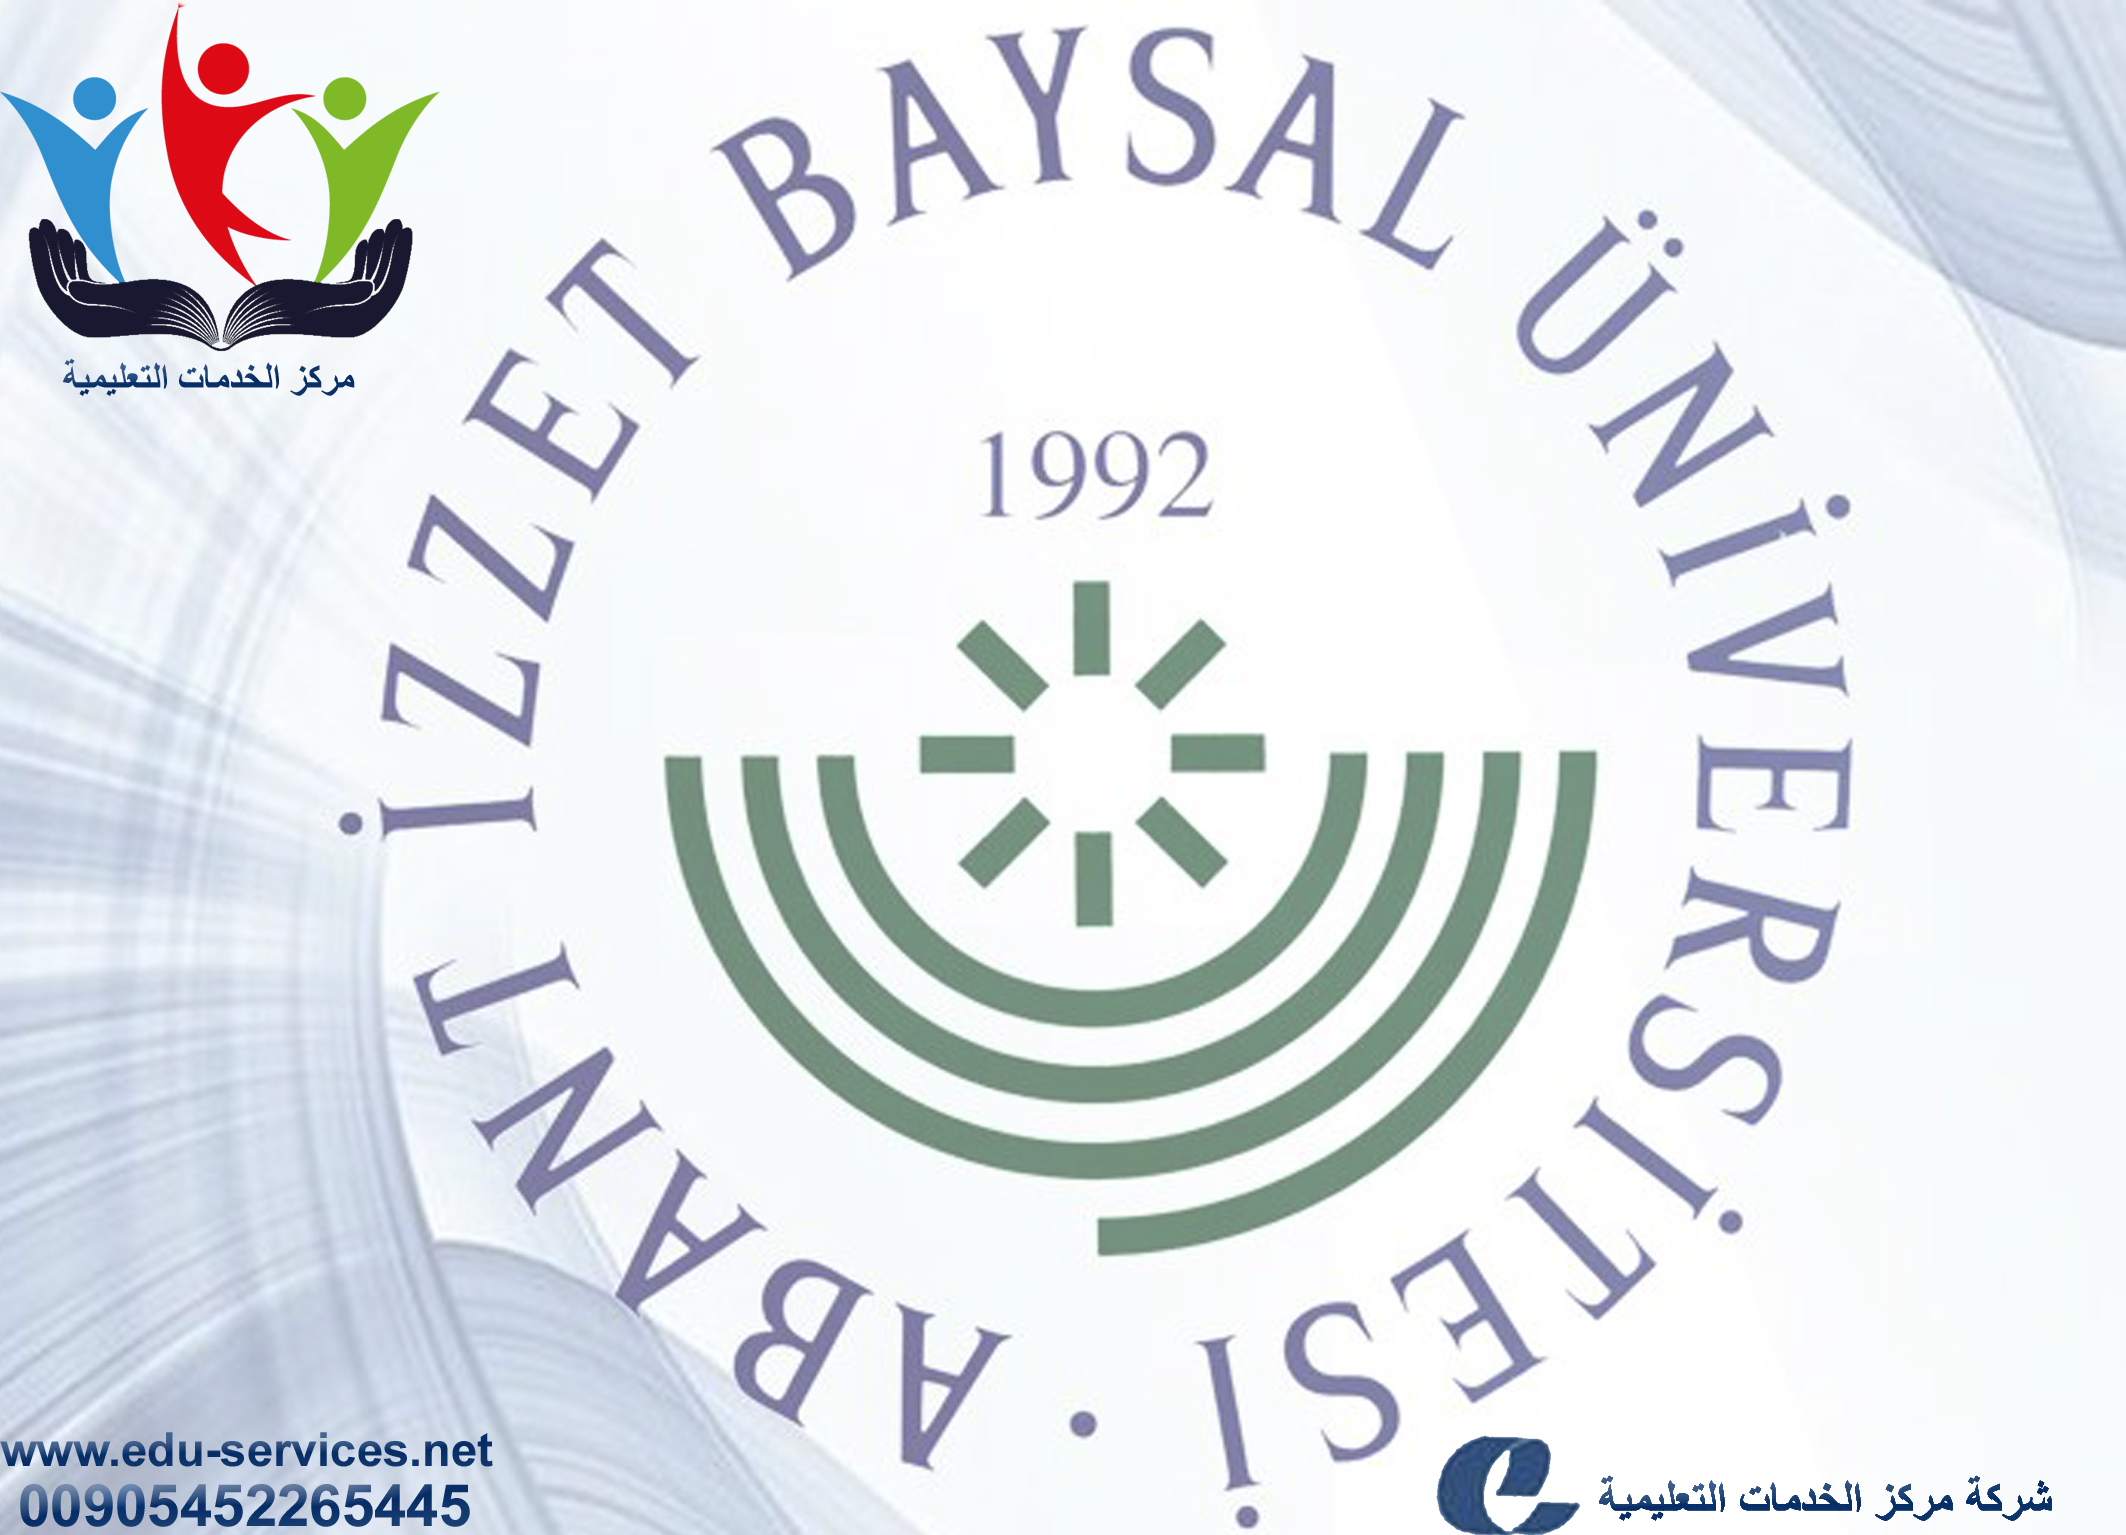 افتتاح التسجيل على جامعة ابانت عزت بايسال للدراسات العليا للعام 2018